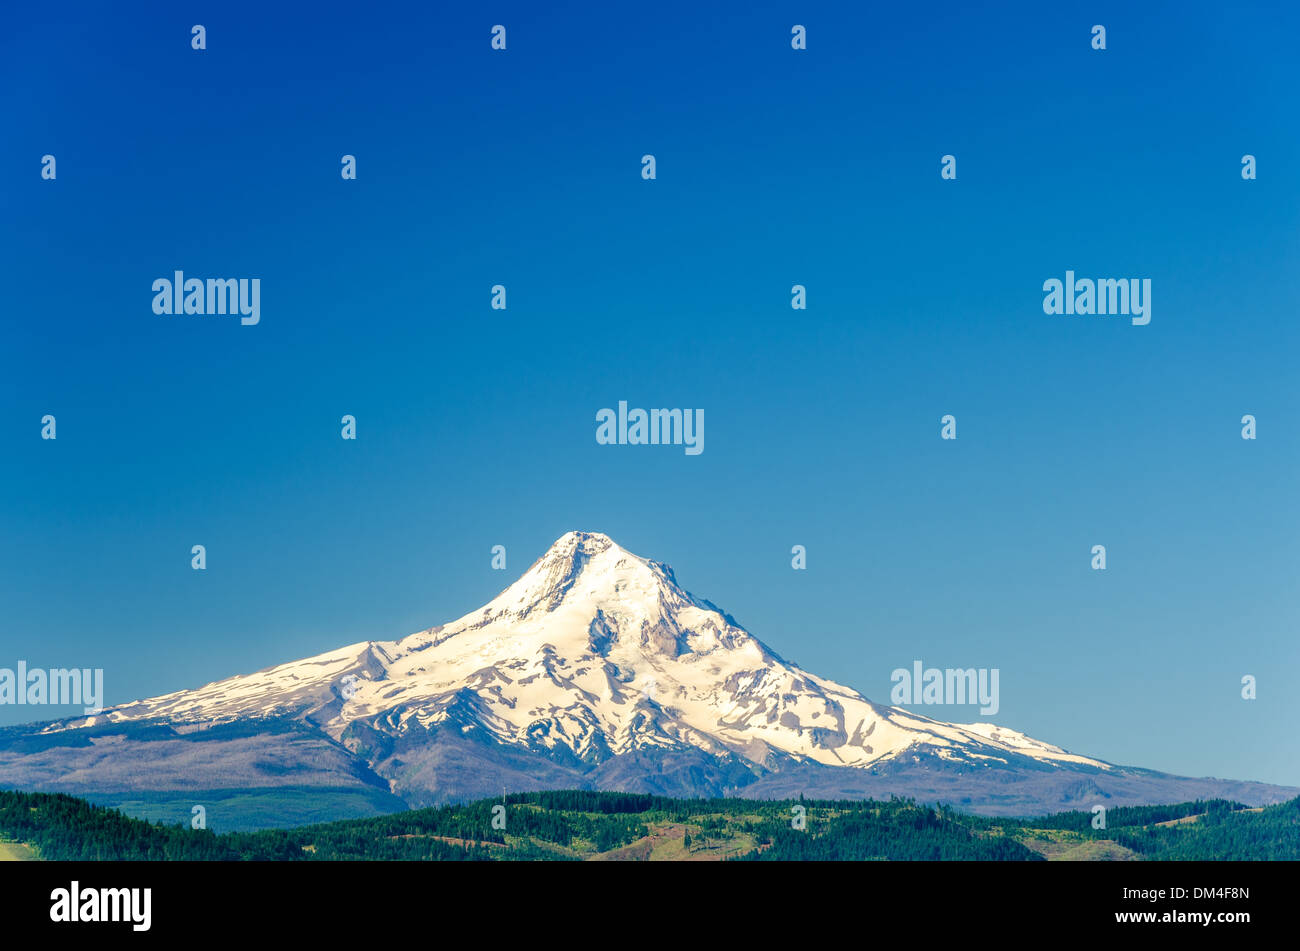 Couvert de neige magnifique Mt. Capot et un ciel bleu profond dans l'Oregon, USA Banque D'Images